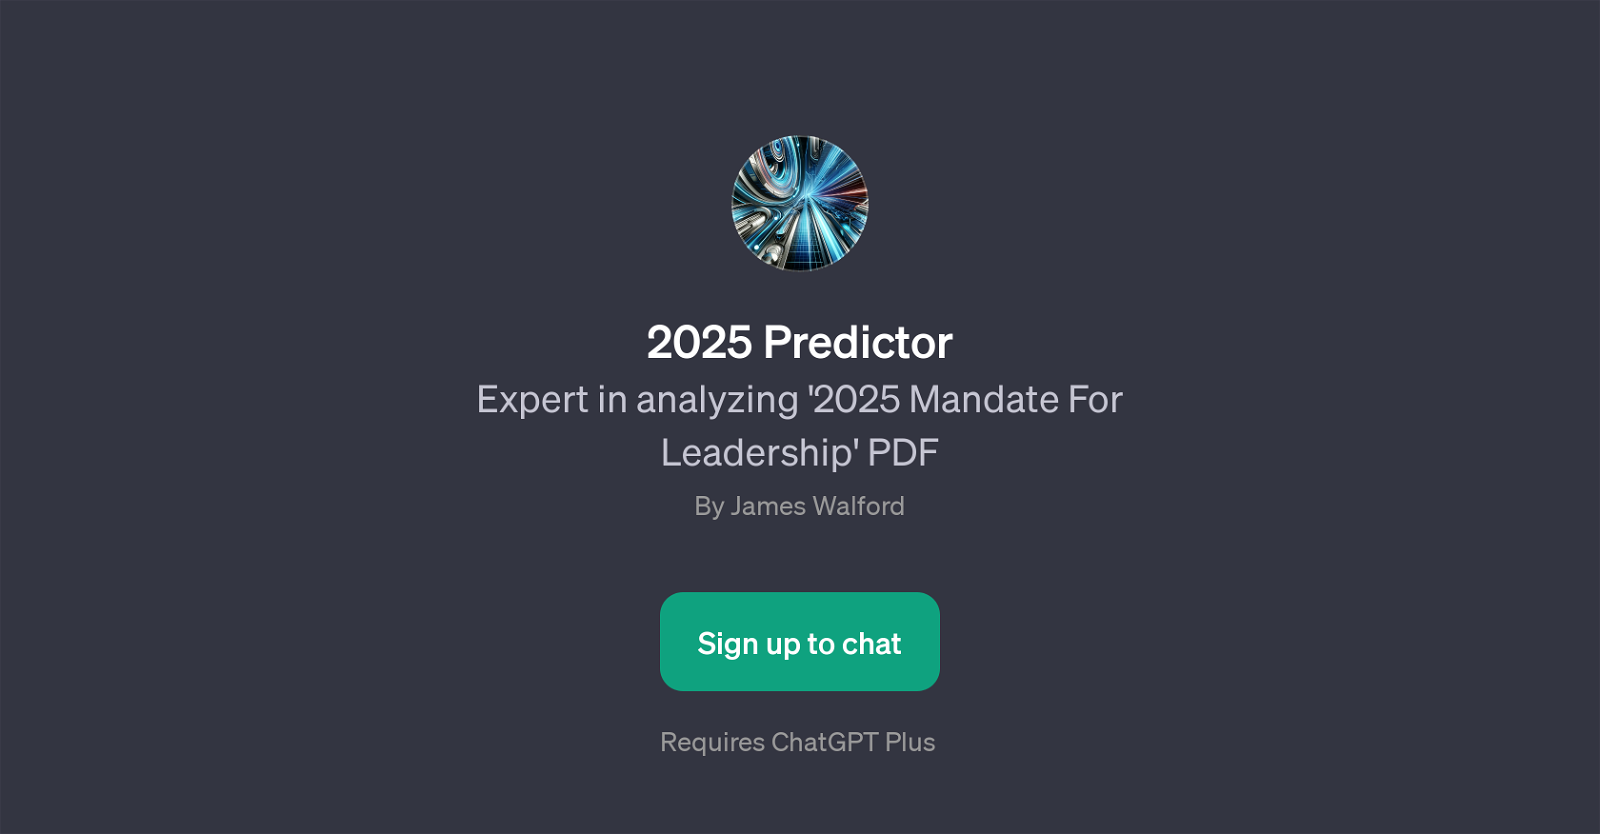 2025 Predictor website